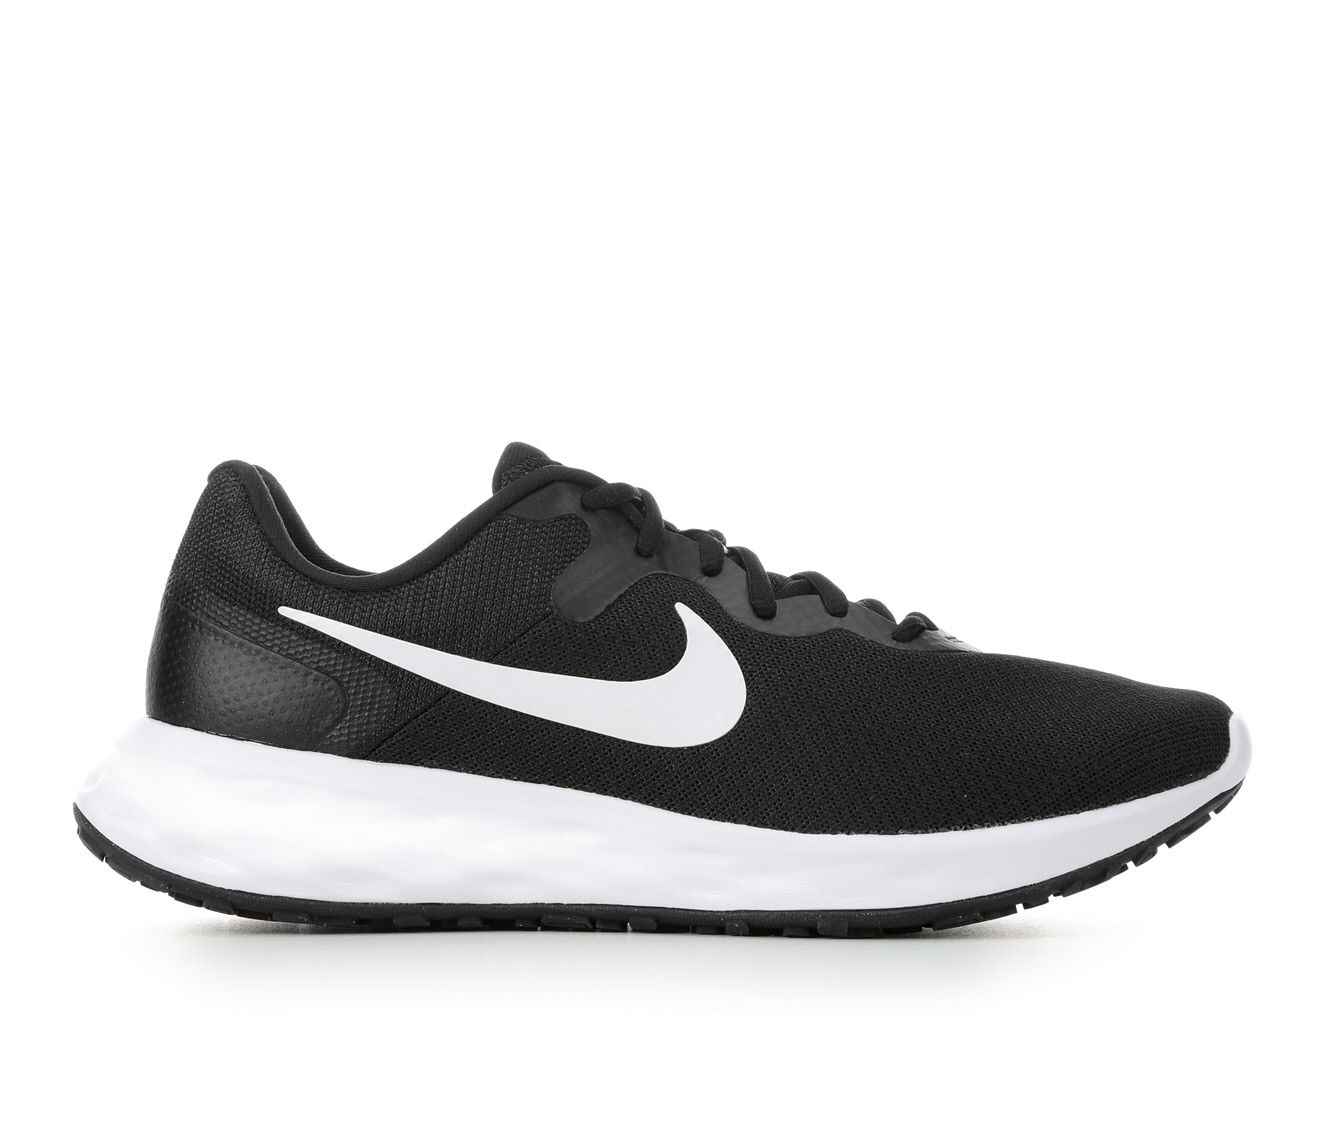 Men's Nike Running Shoes | Shoe Carnival